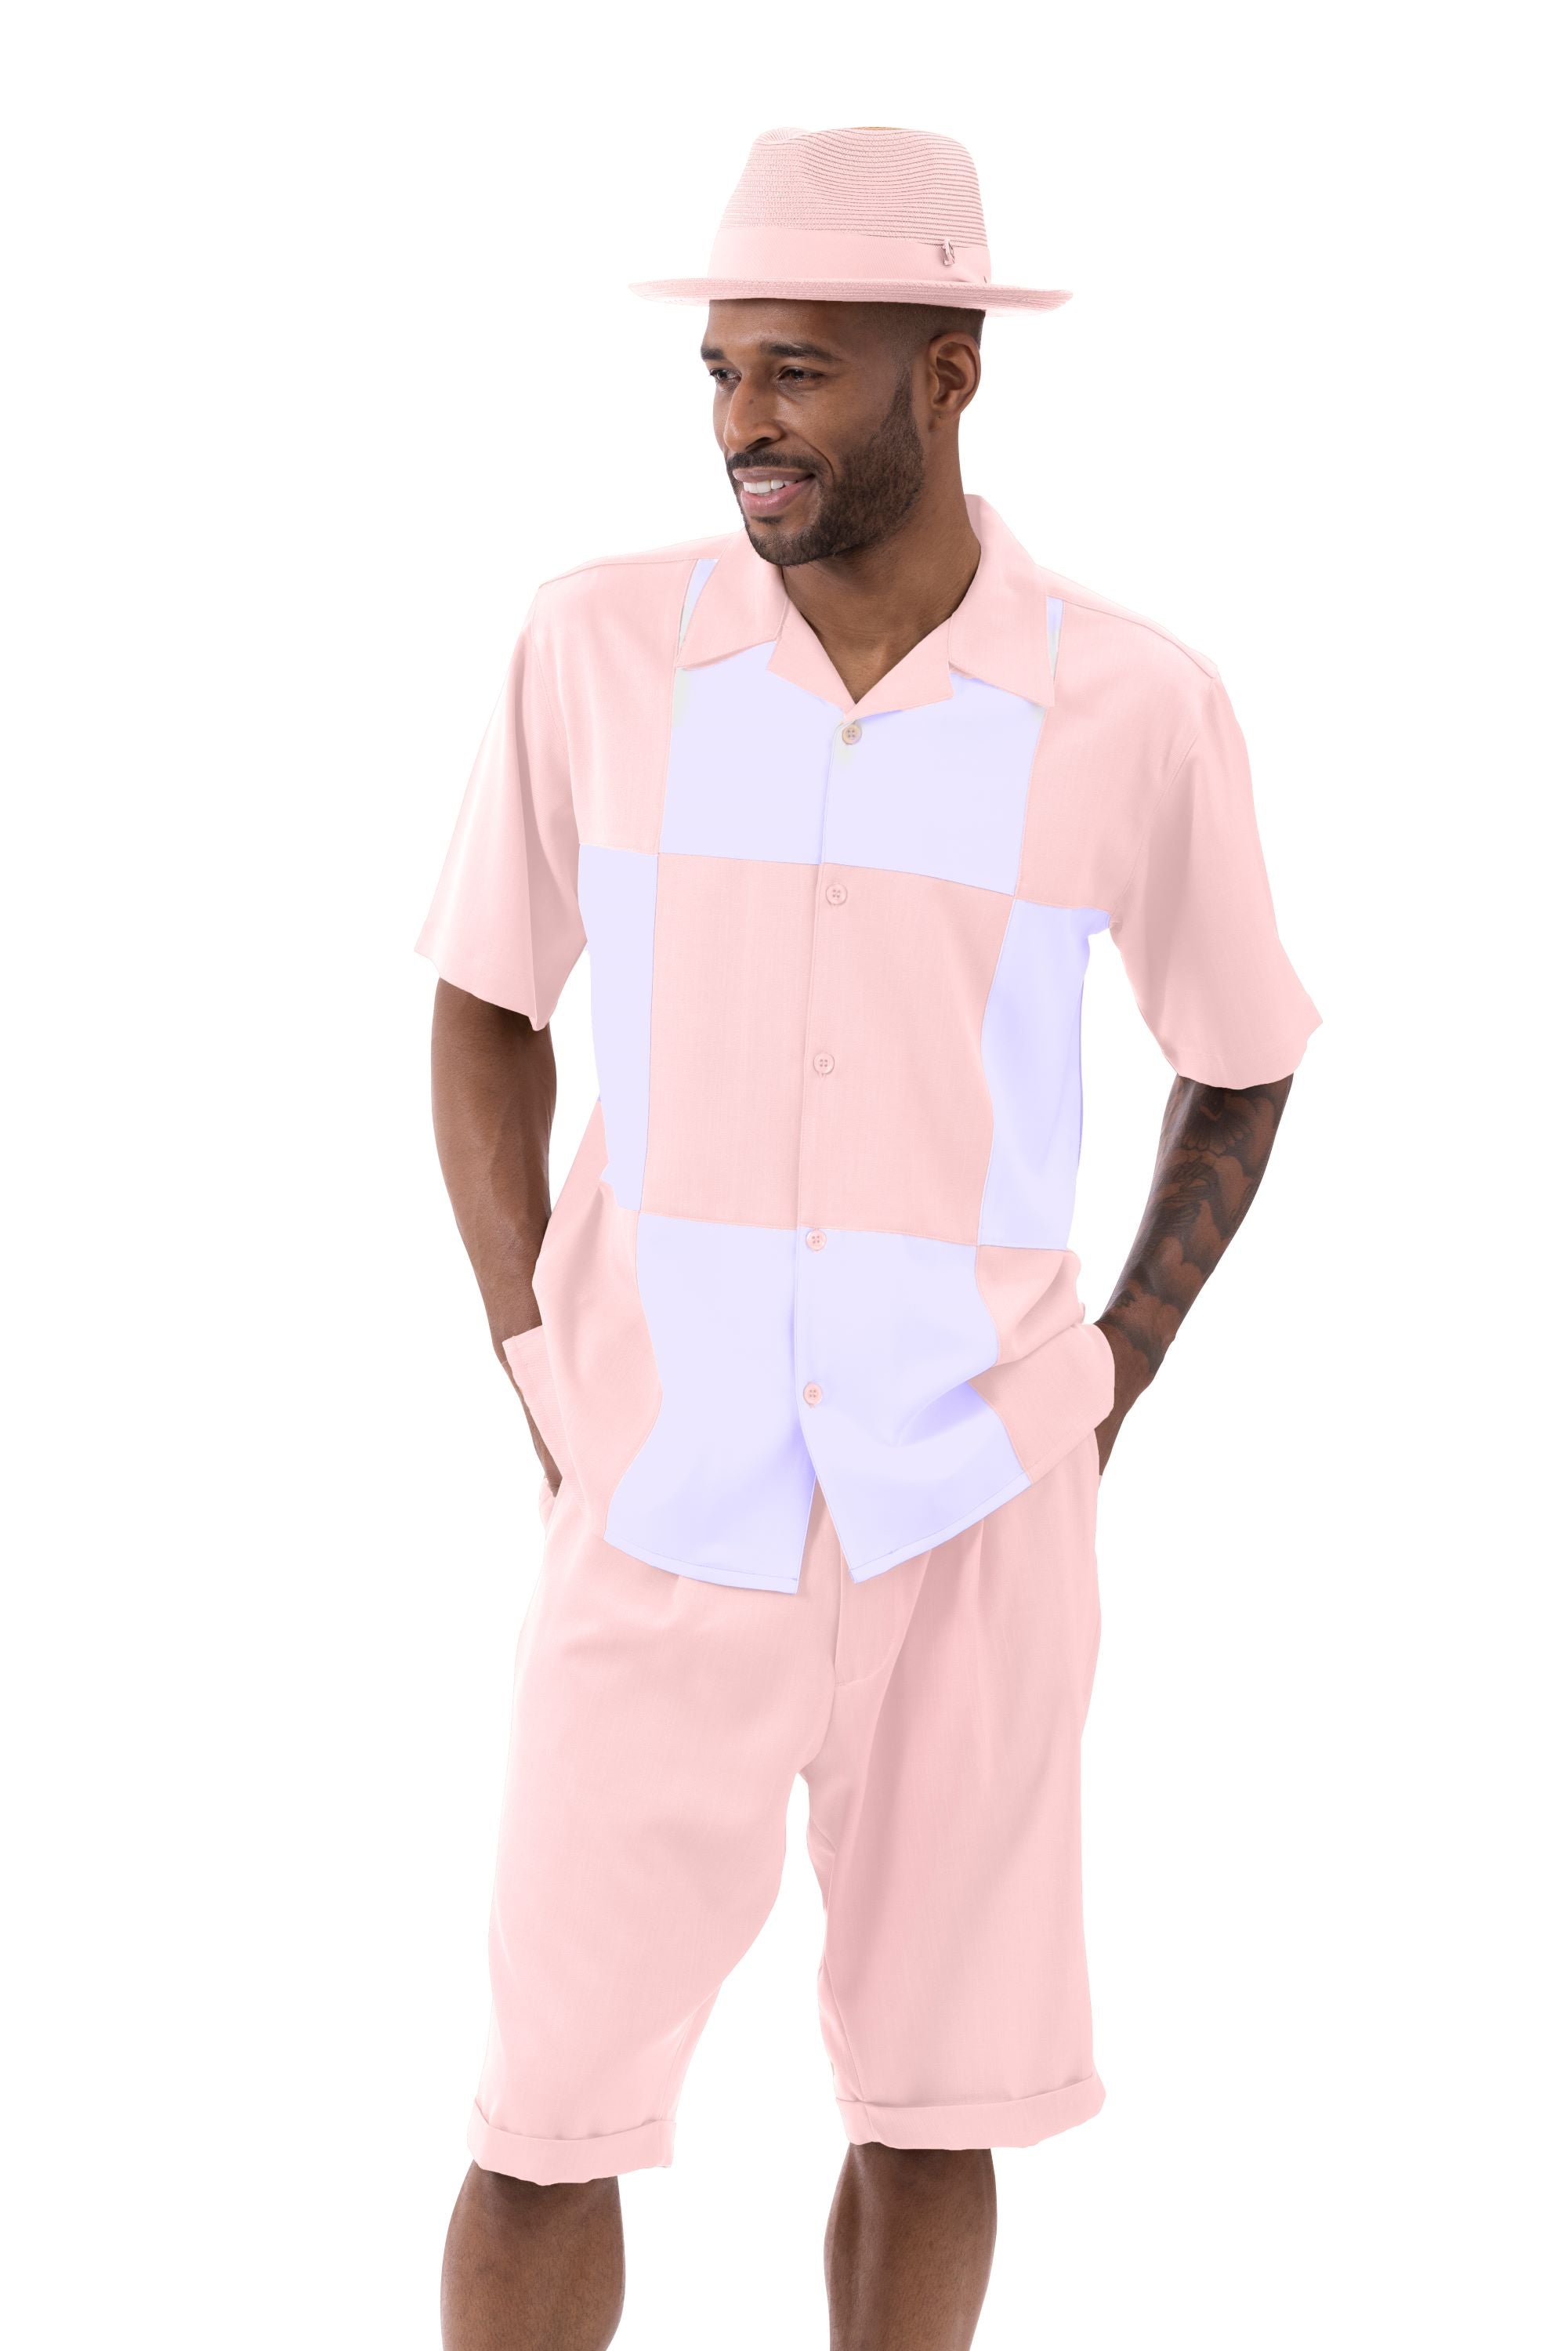 Pink Suit Shorts